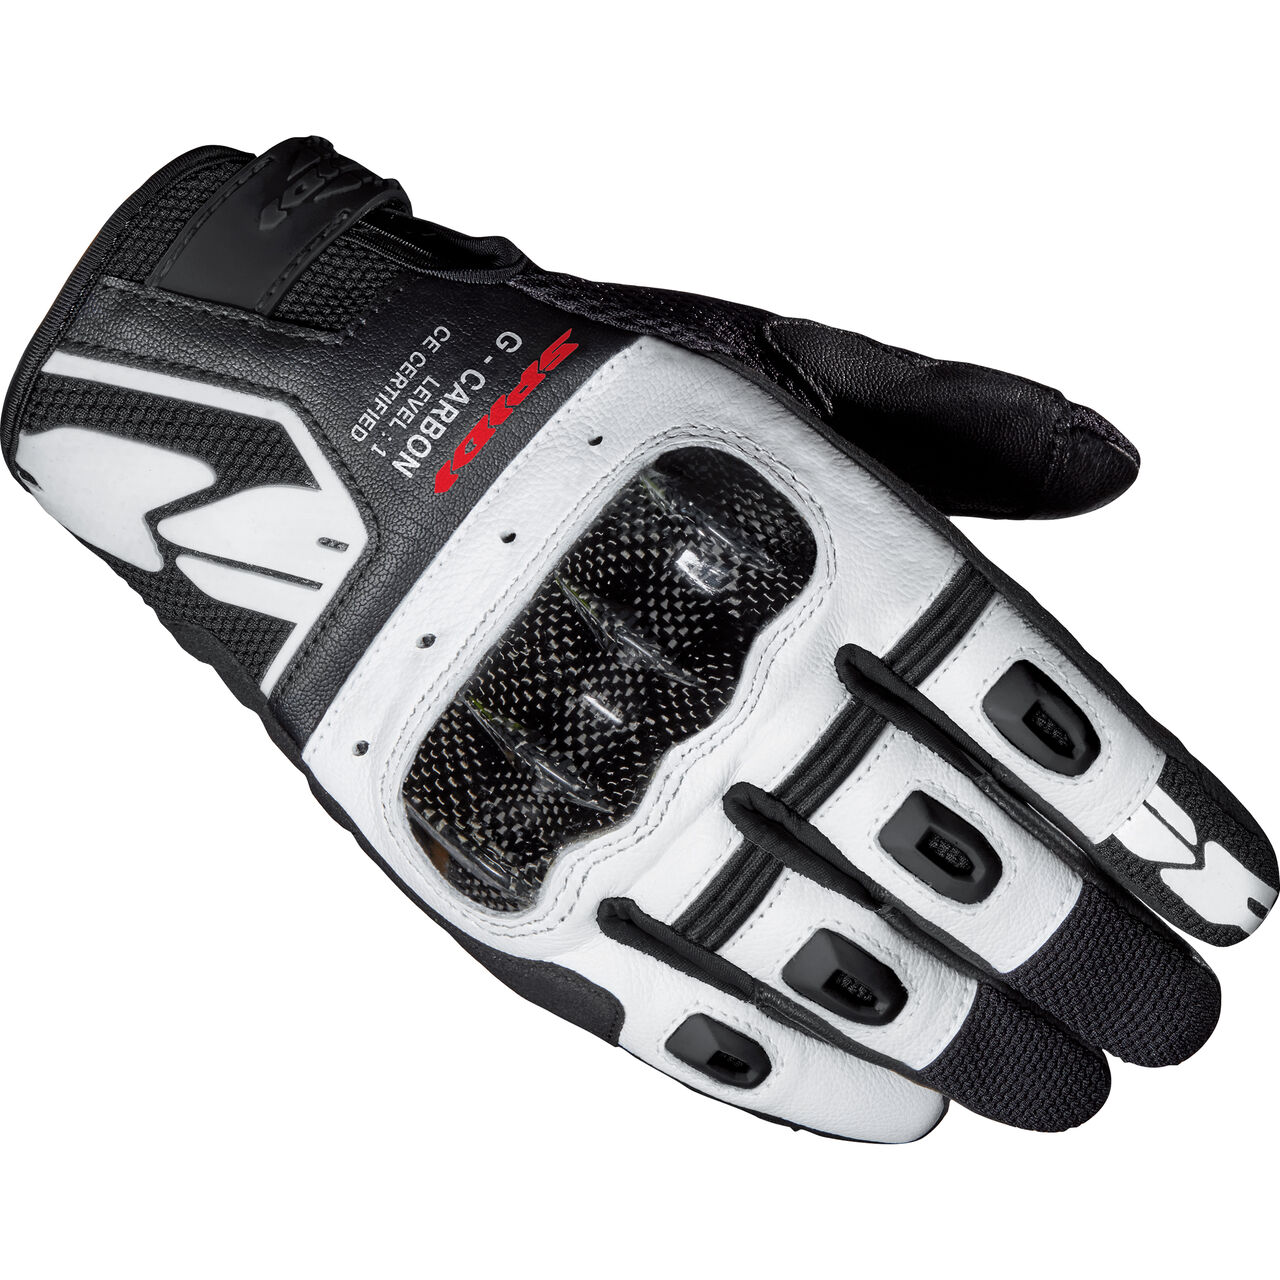 G-Carbon Handschuh weiß/schwarz